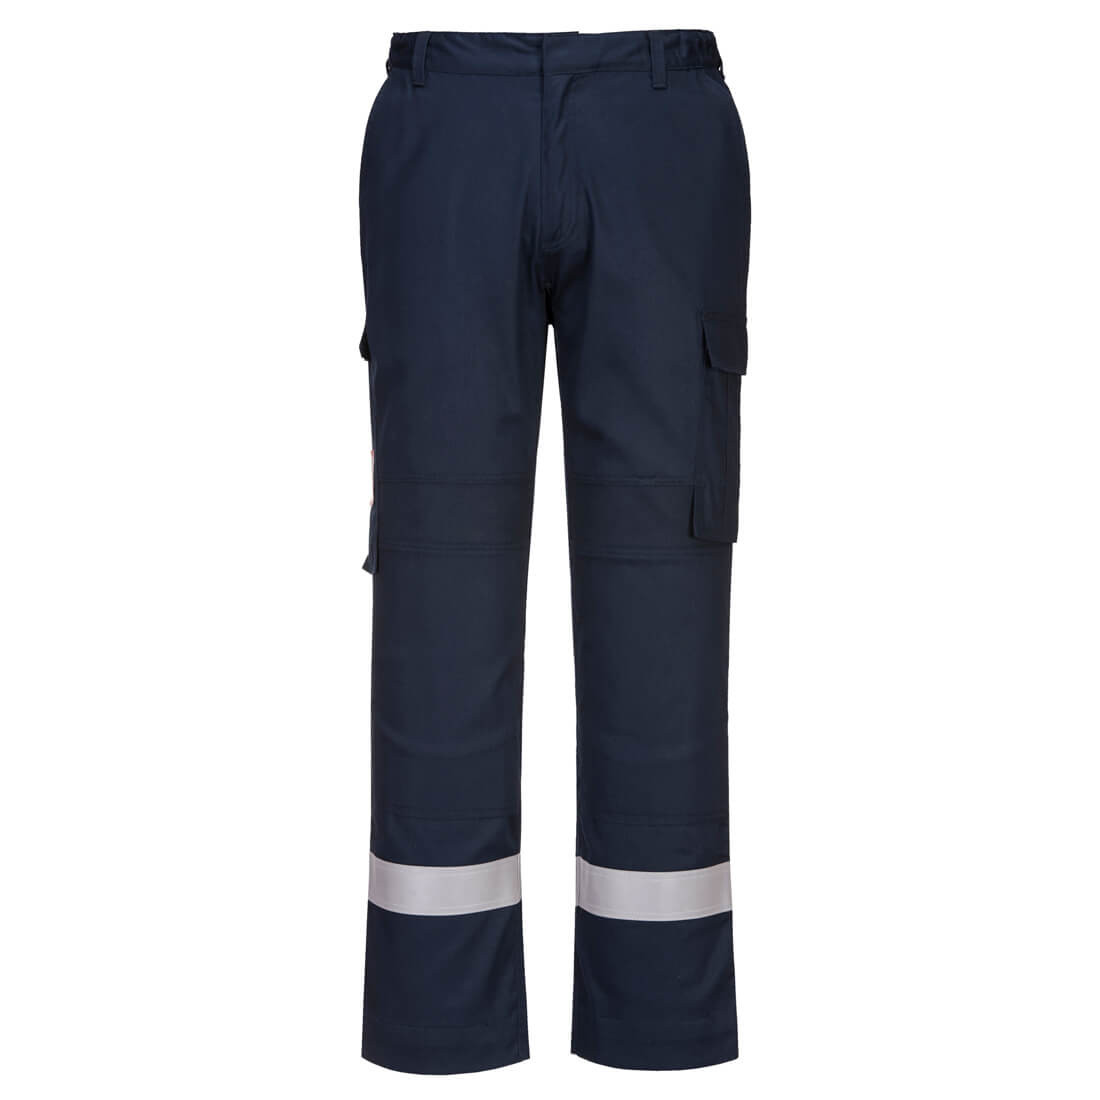 Pantalon Bizflame Plus - Les vêtements de protection